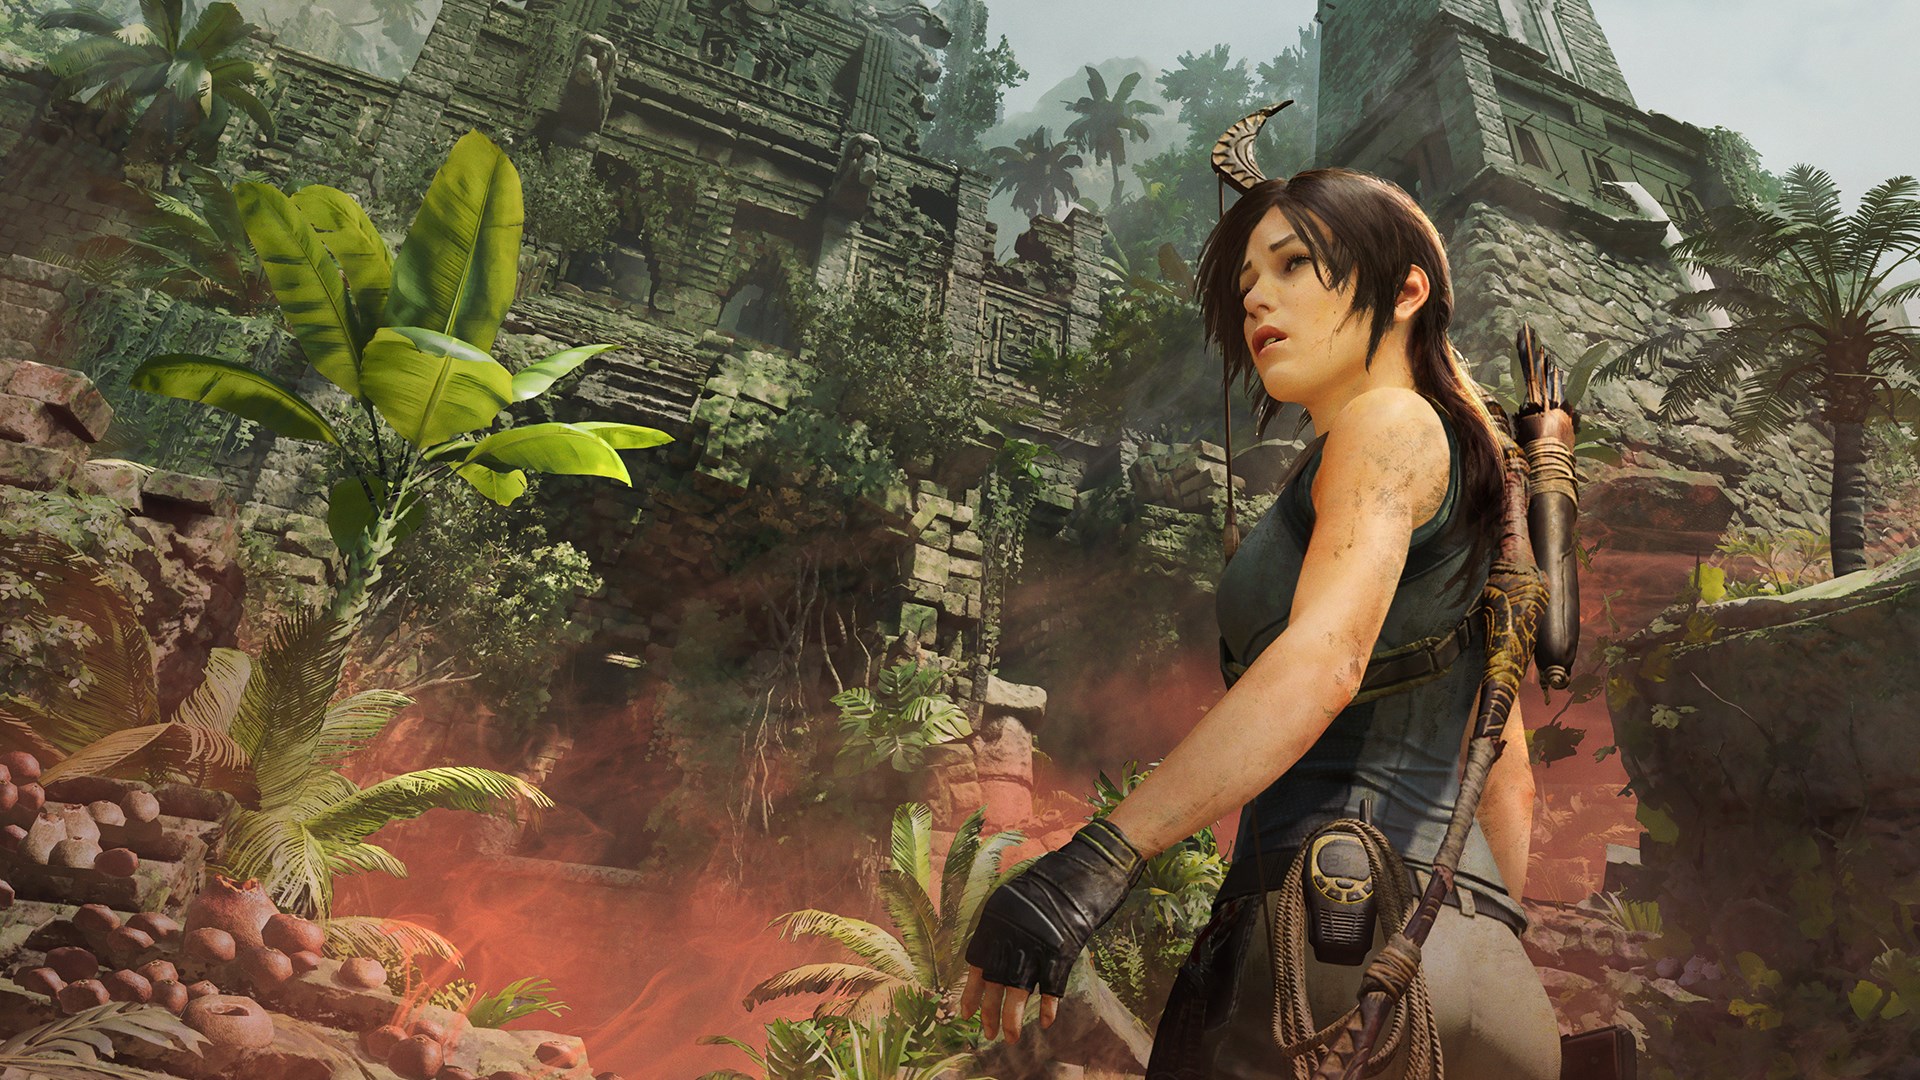 Shadow of the Tomb Raider (STEAM KEY)+BONUS